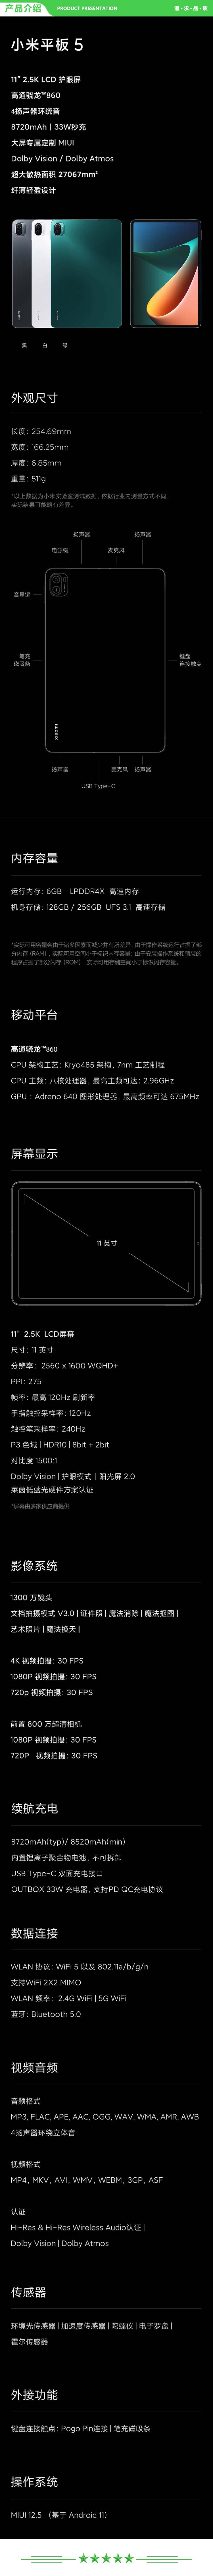 小米 xiaomi 平板5 平板电脑（11英寸2.5K高清 120Hz 骁龙860 6G+128GB 33W快充 杜比影音娱乐办公 绿色）+ 键盘套装.jpg